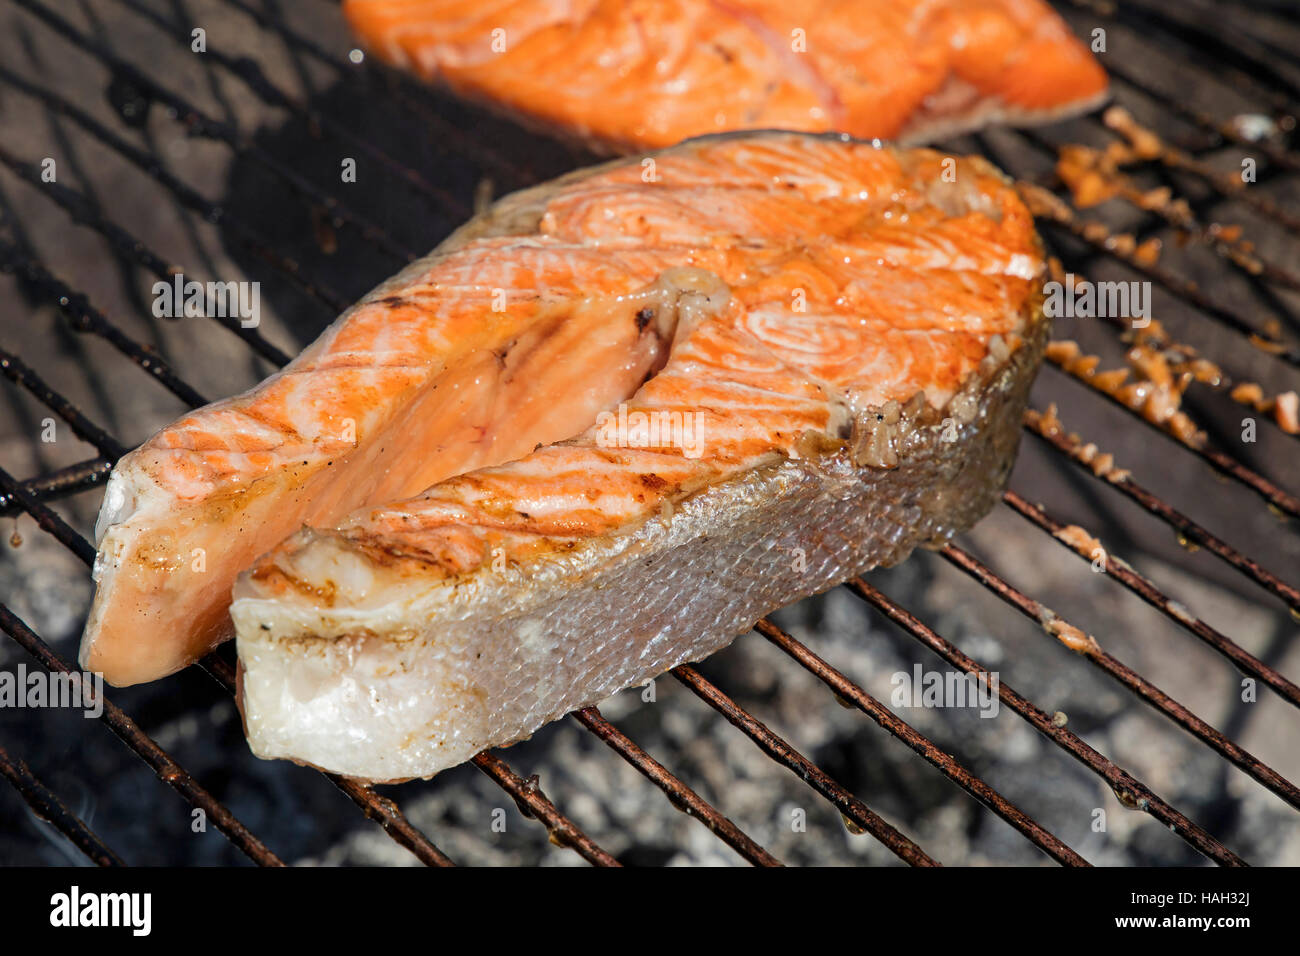 Salmone alla griglia bistecca di pesce Farina di barbecue per la cottura, preparato sulla griglia per il barbecue, close up Foto Stock